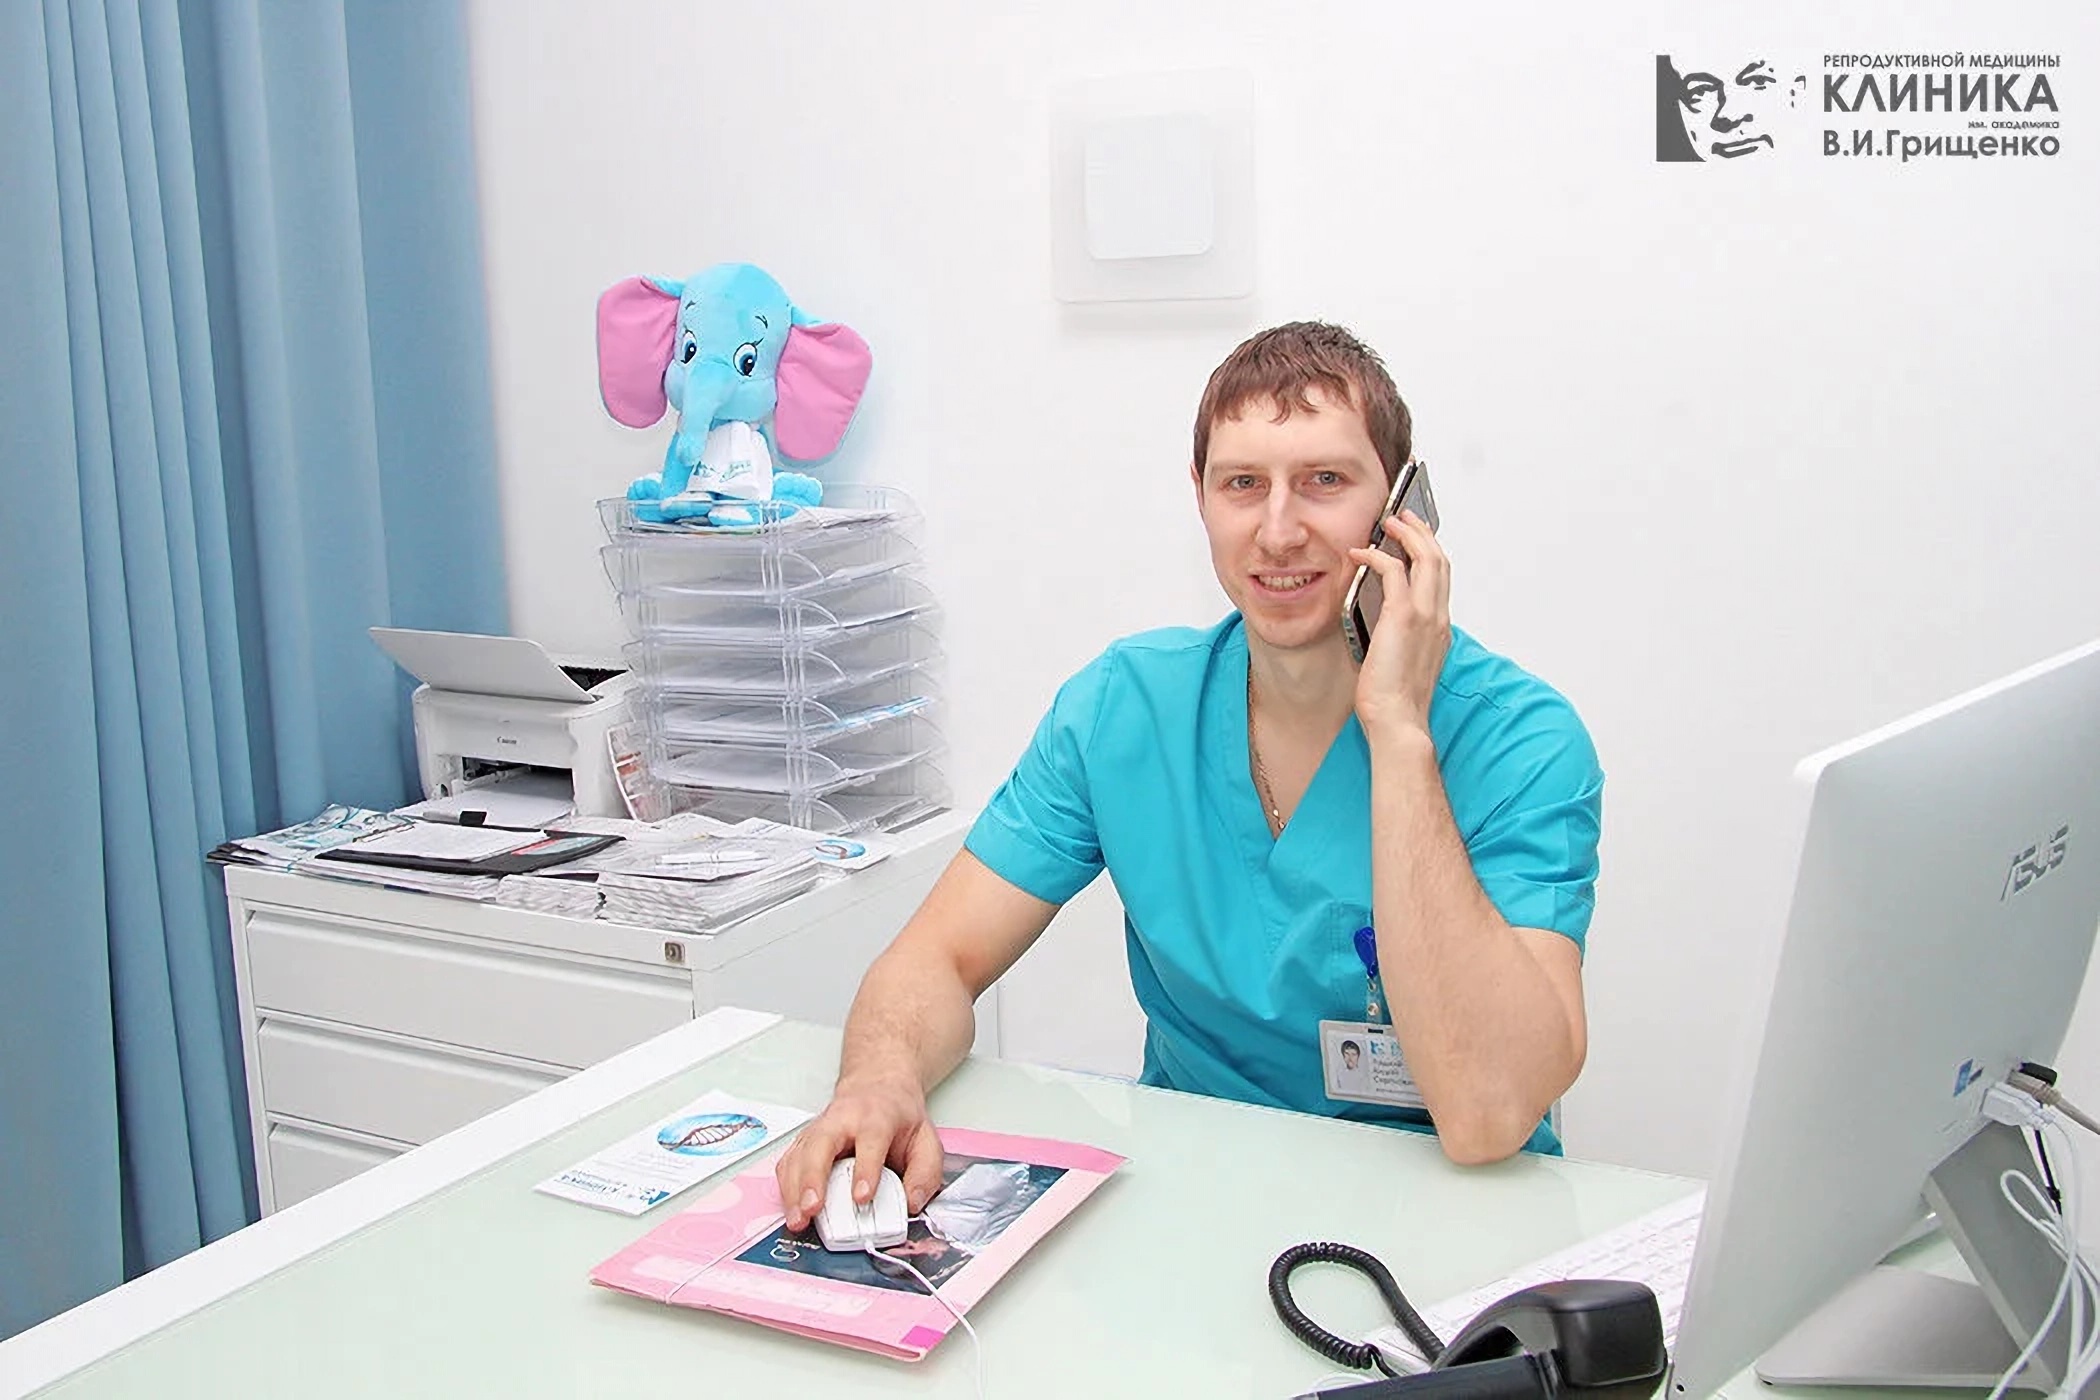 Гинеколог в Клинике Грищенко Львов Украина